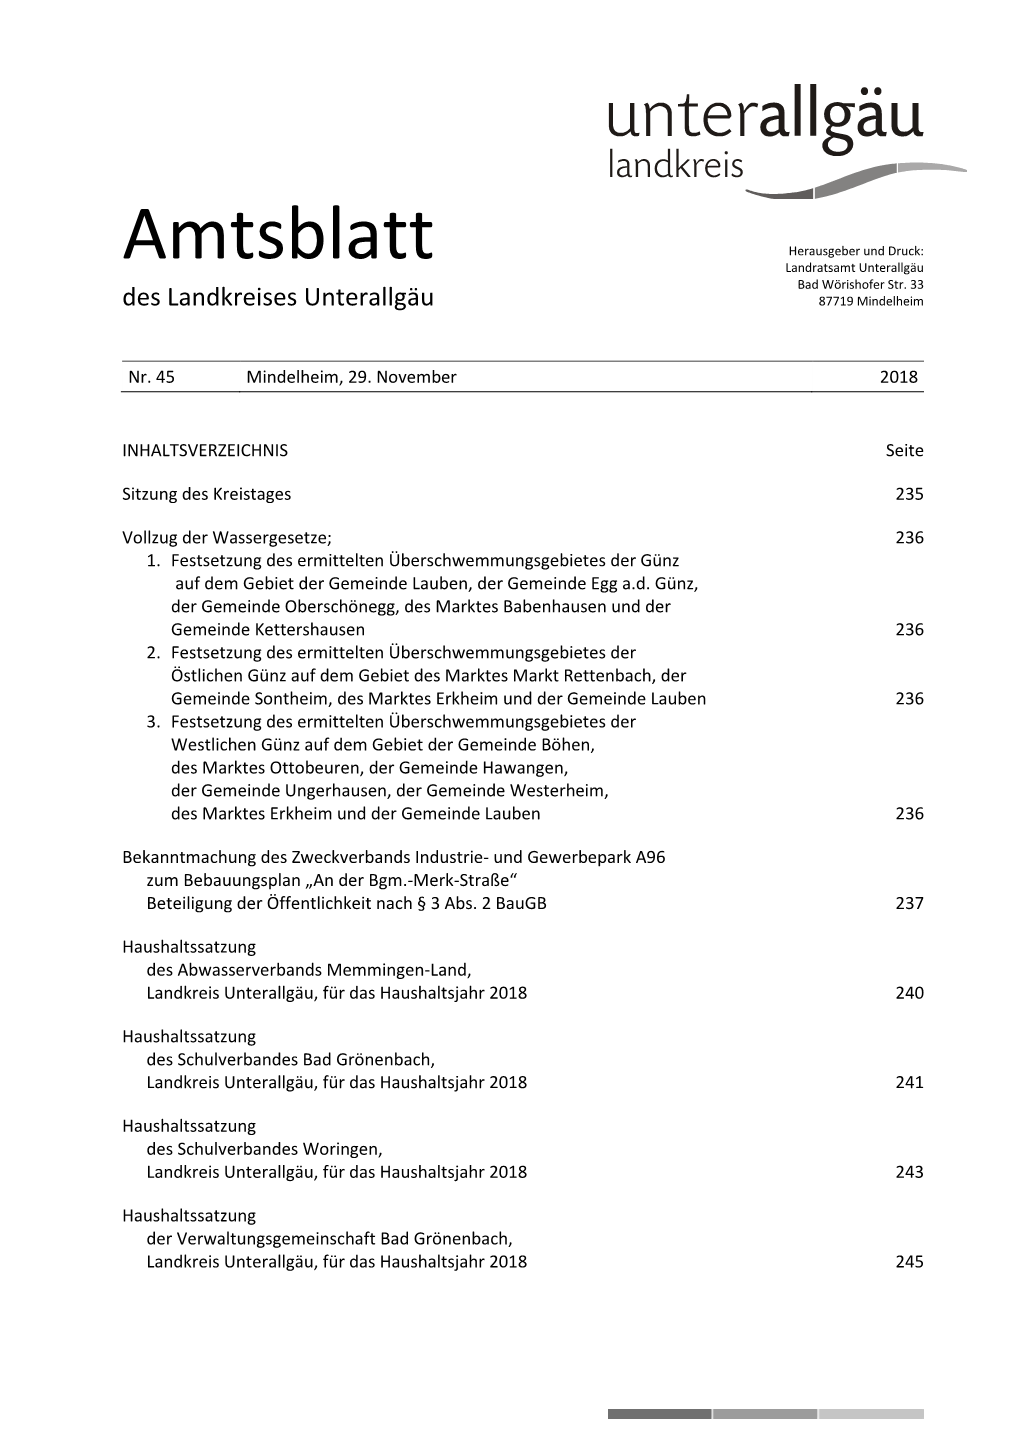 Amtsblatt 45